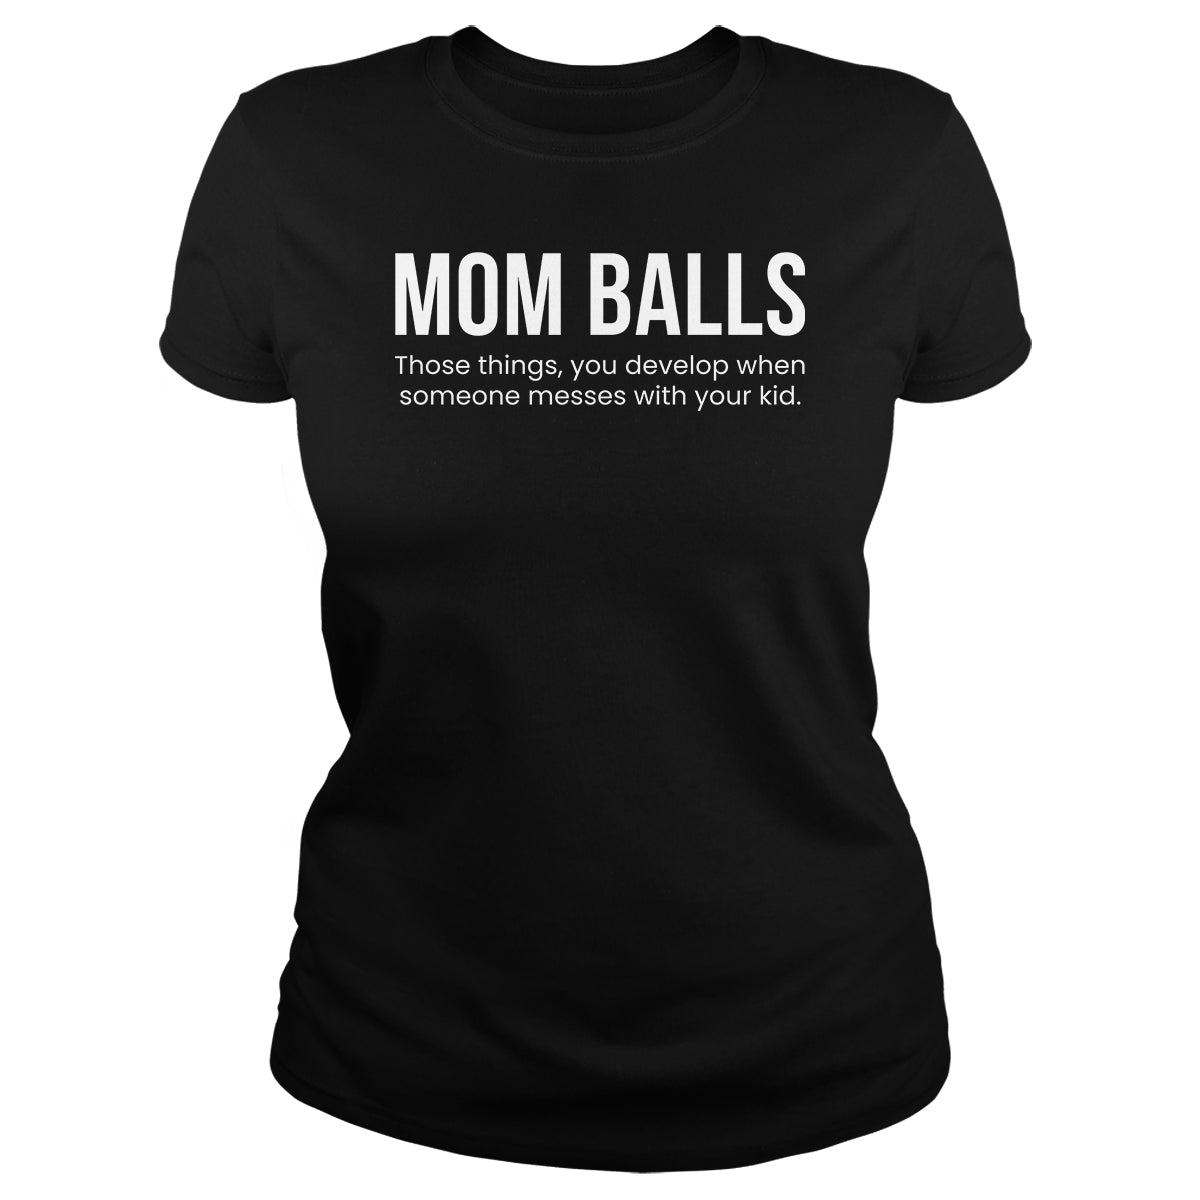 Mom Balls - BustedTees.com